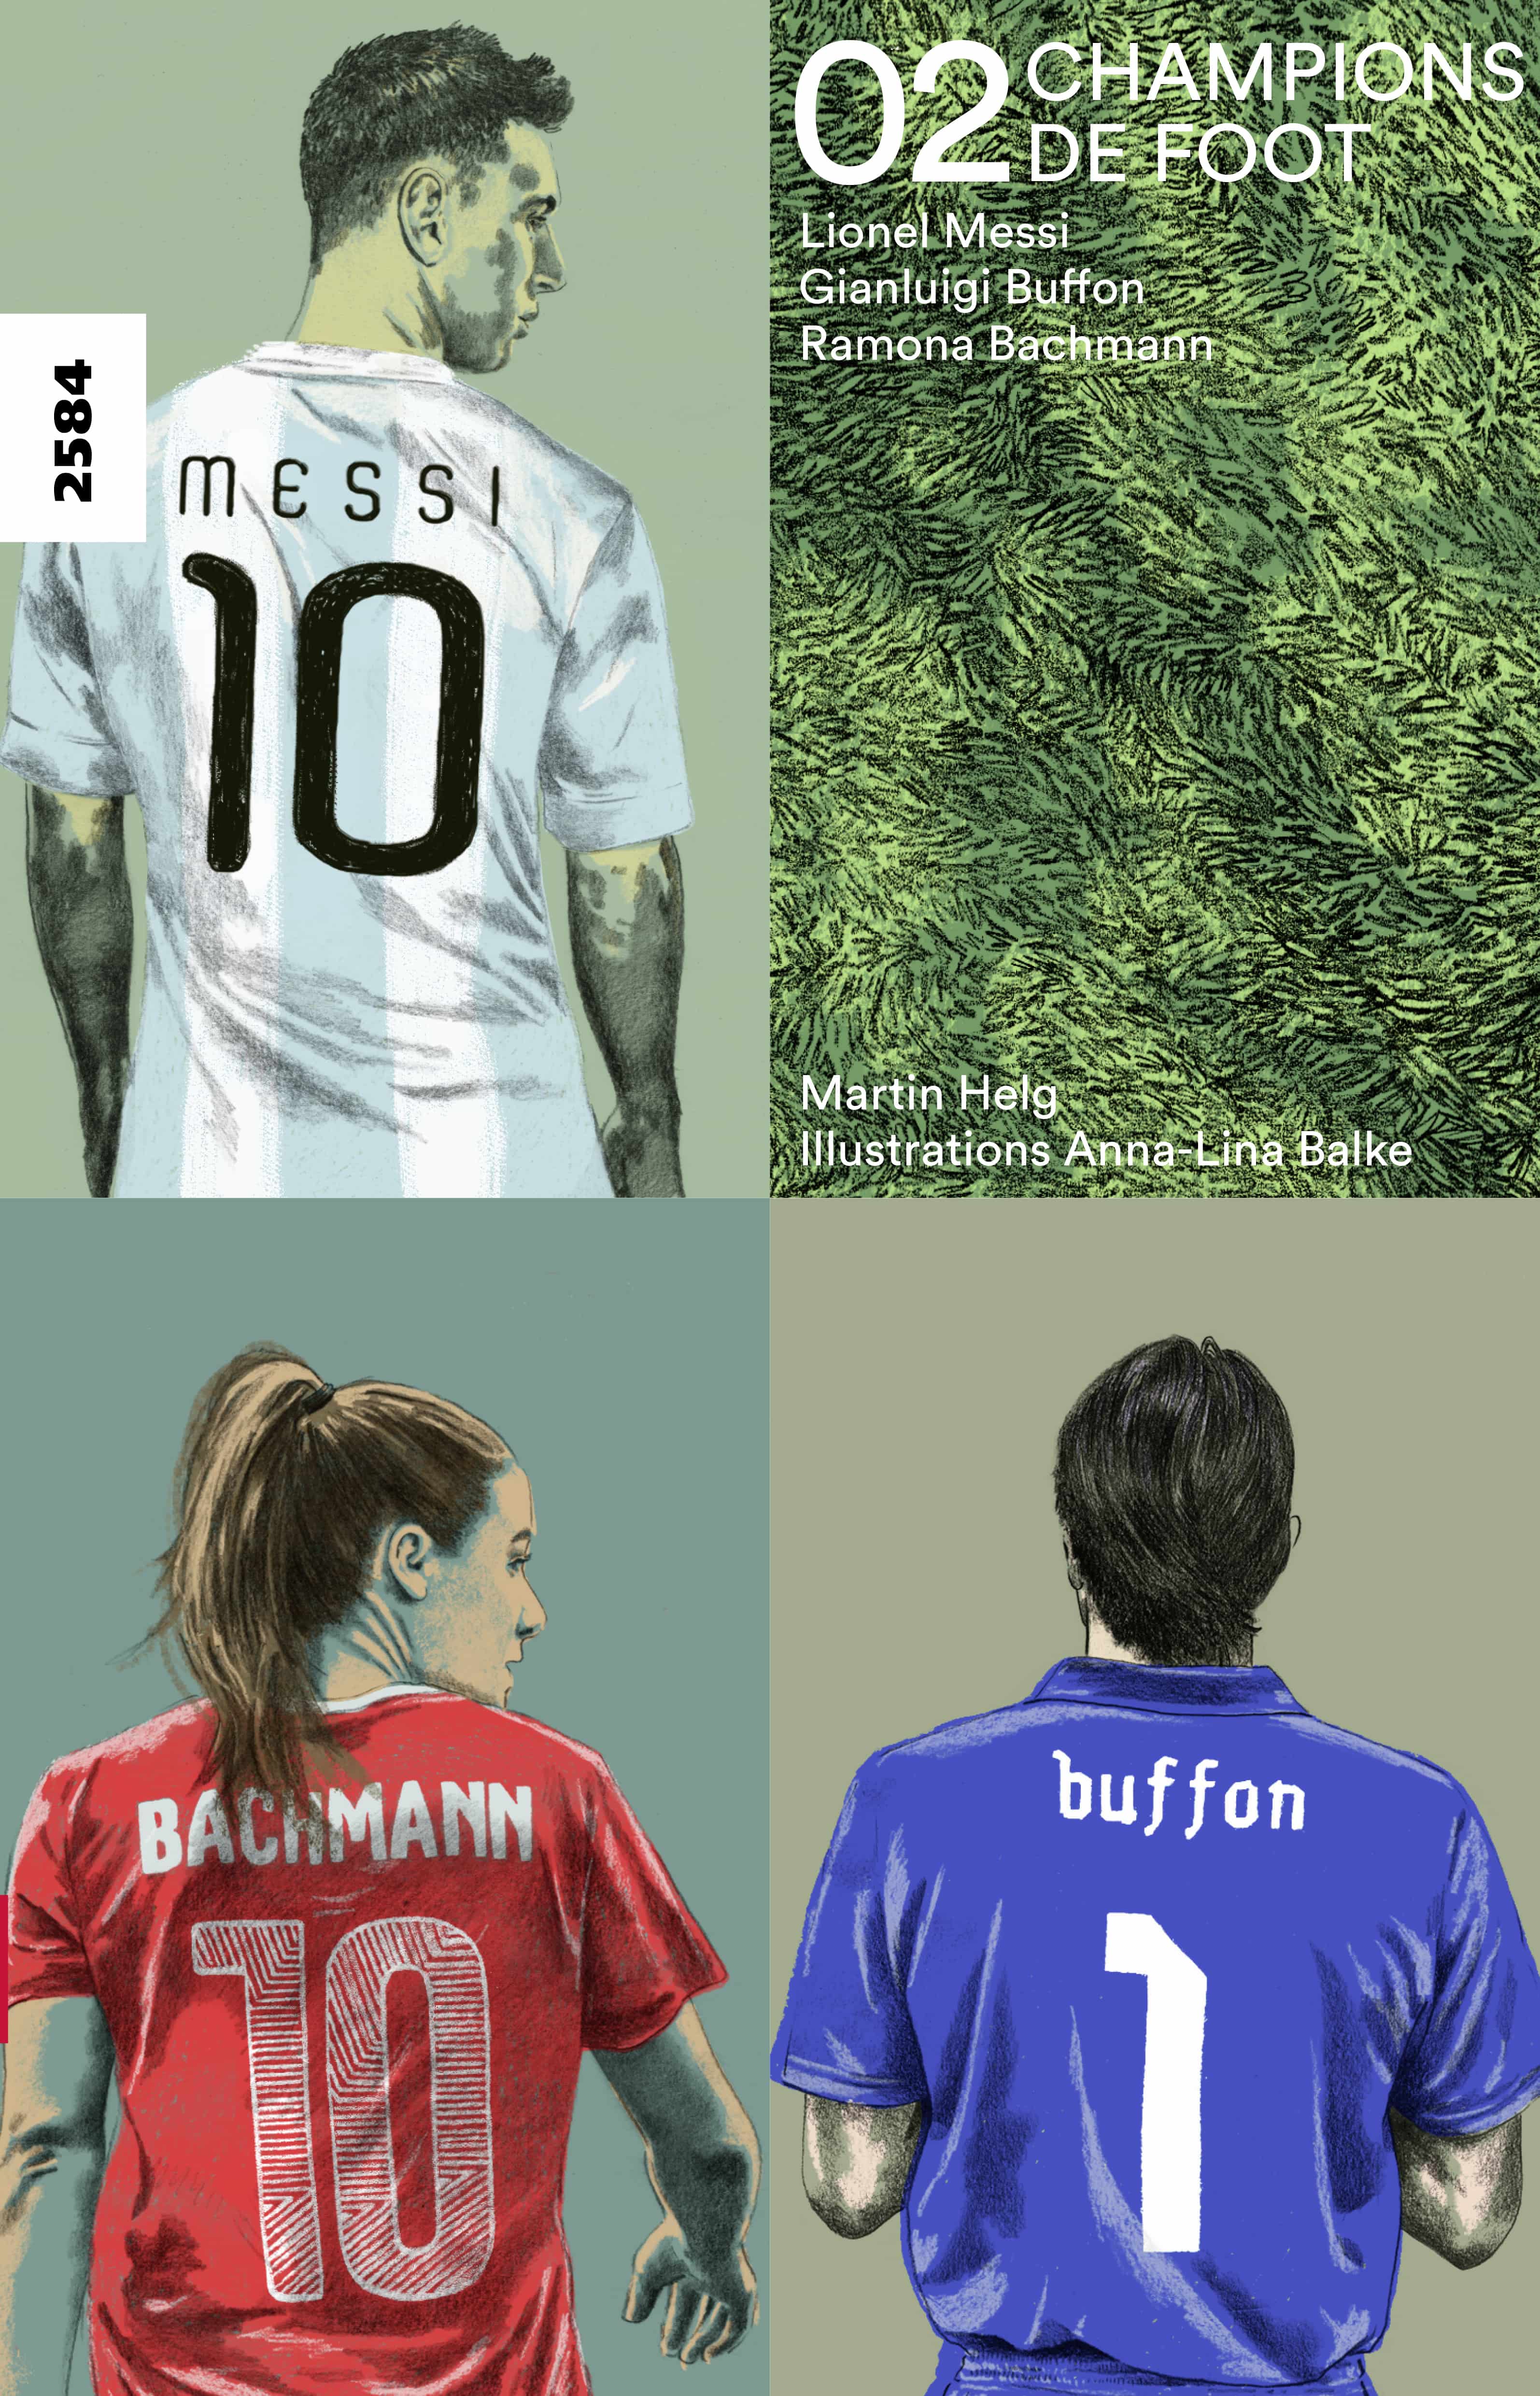 Champions de foot 02 - Lionel Messi, Gianluigi Buffon, Ramona Bachmann